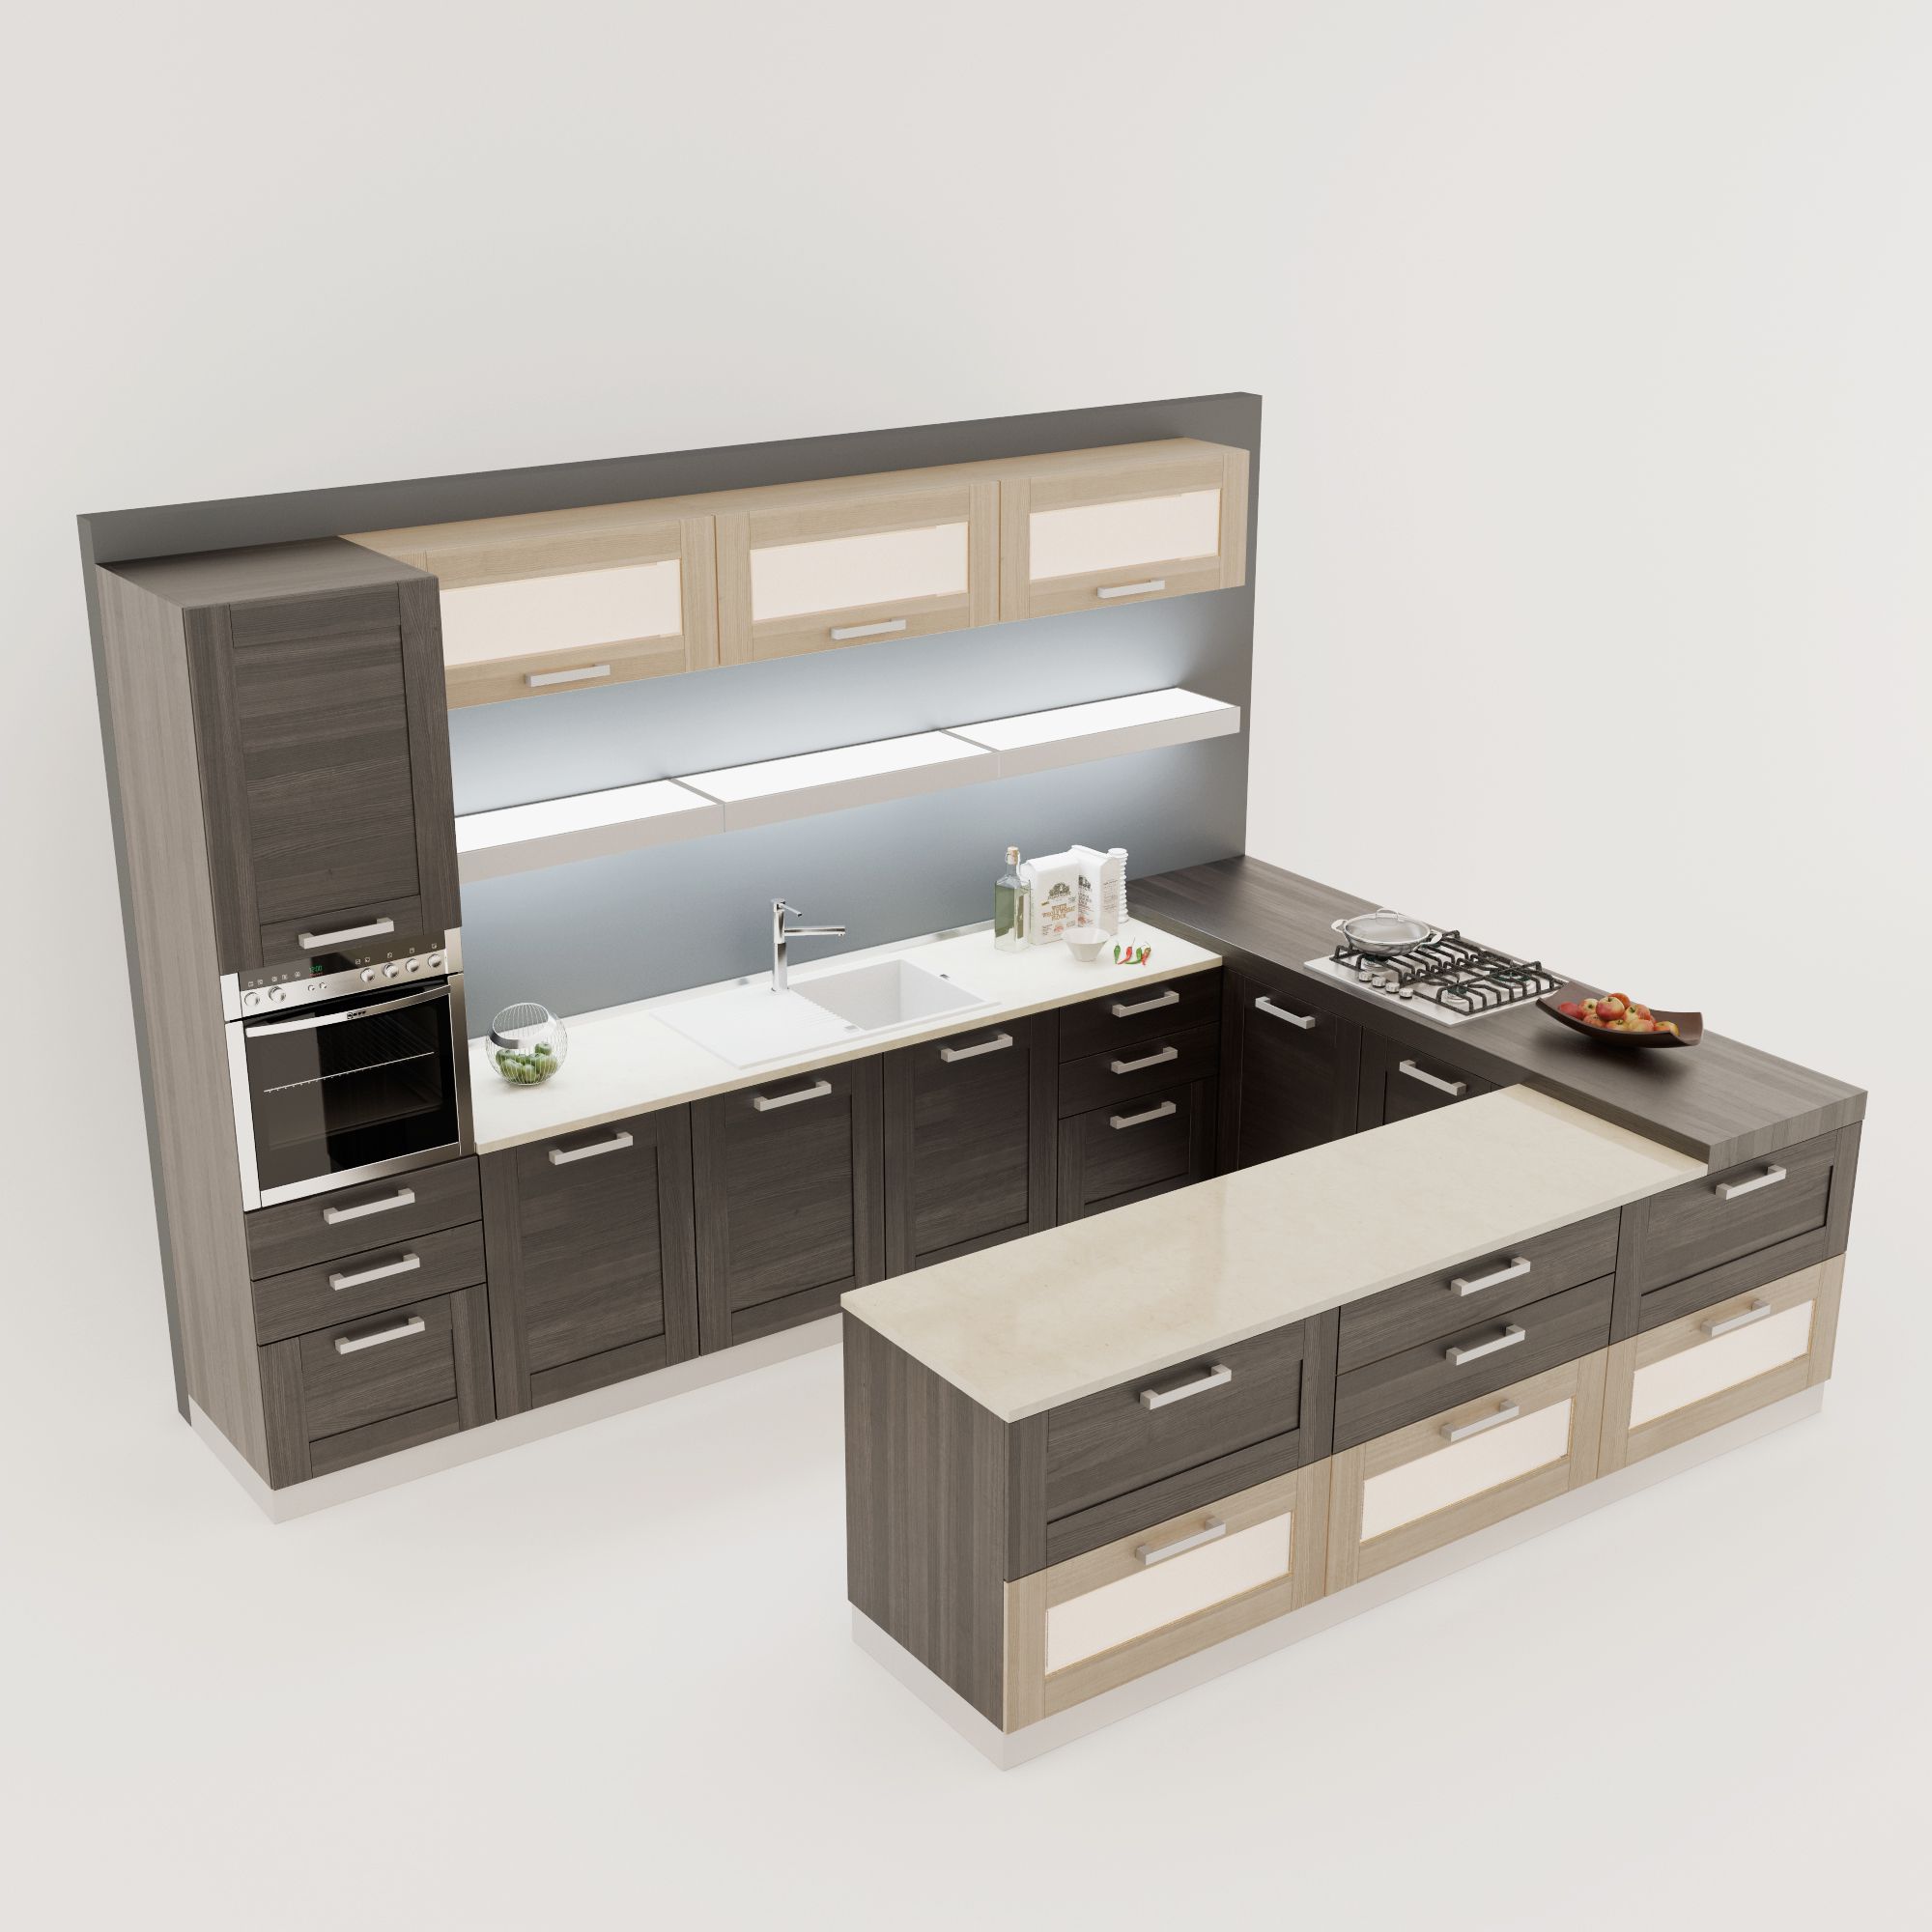 دانلود 31 مدل سه بعدی آشپزخانه مدرن - 20